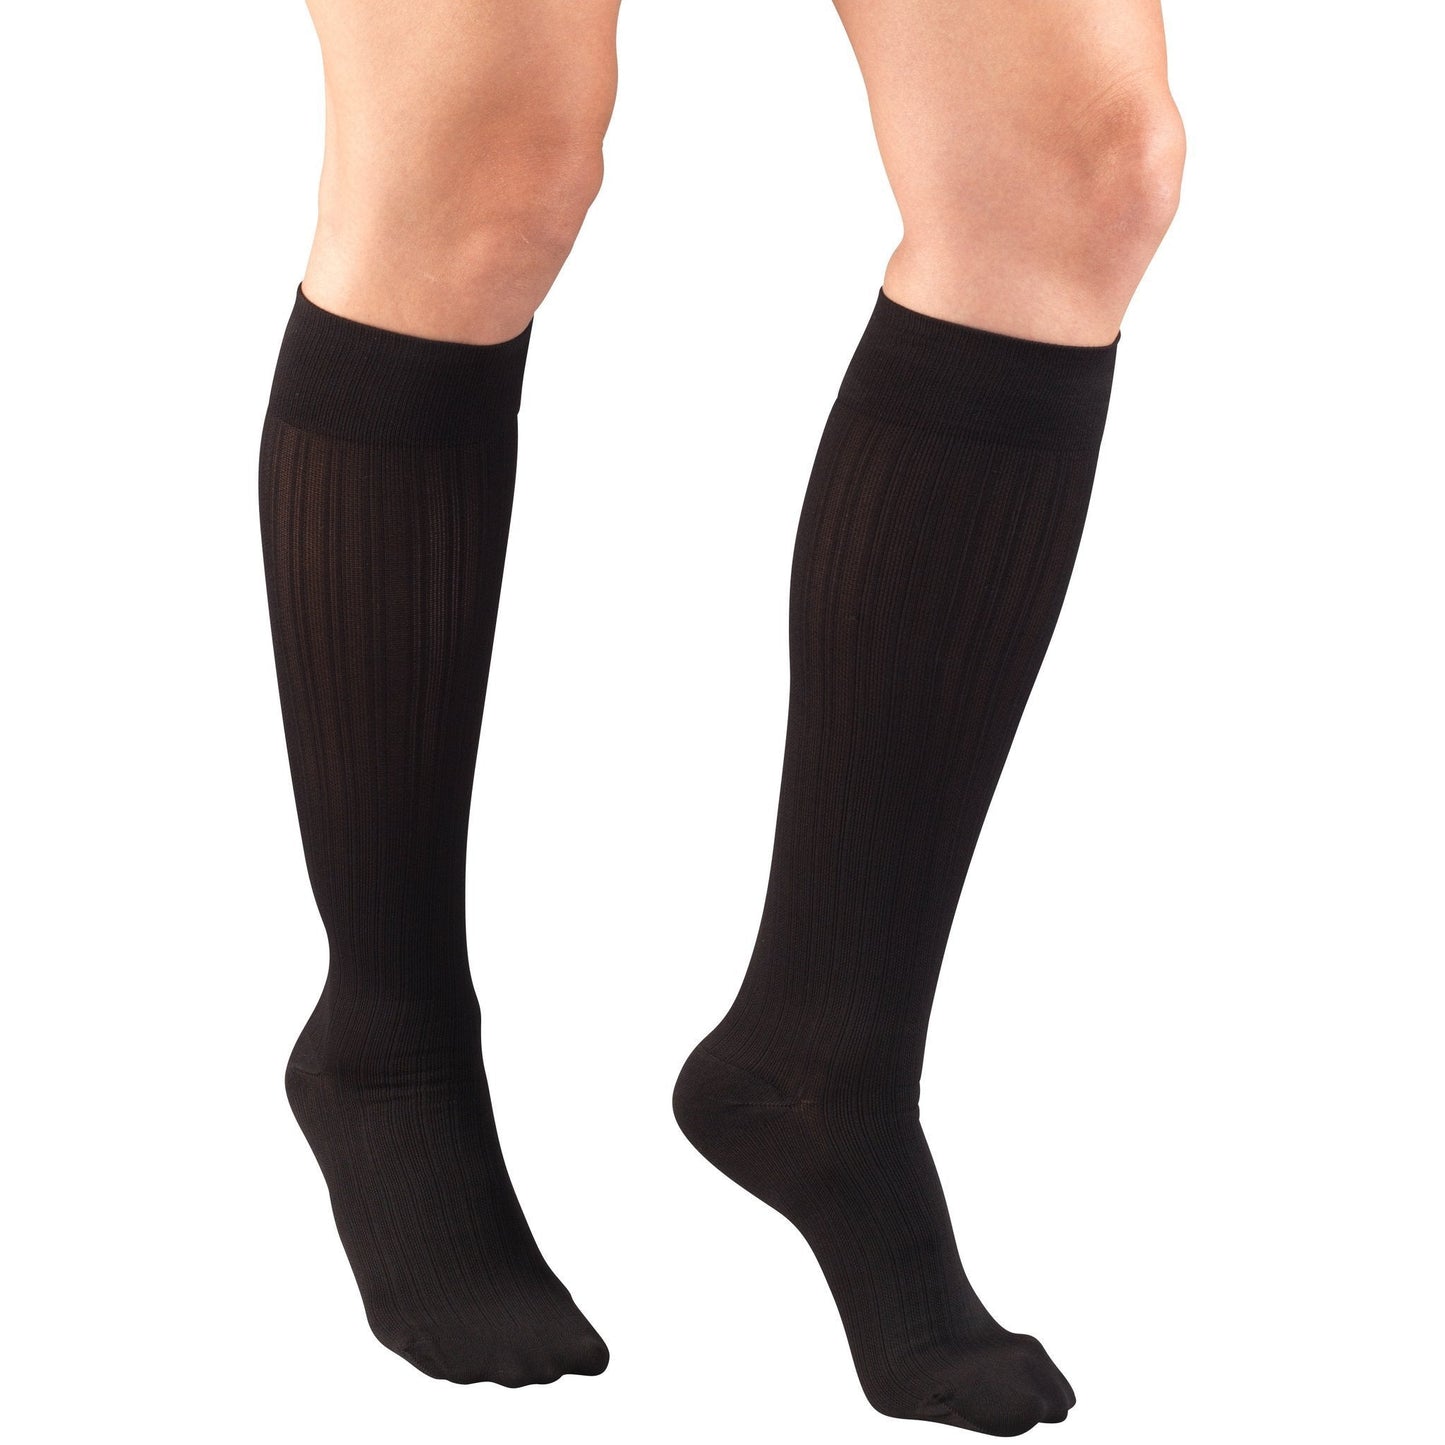 Truform Women's Trouser 15-20 mmHg Knee High, Black